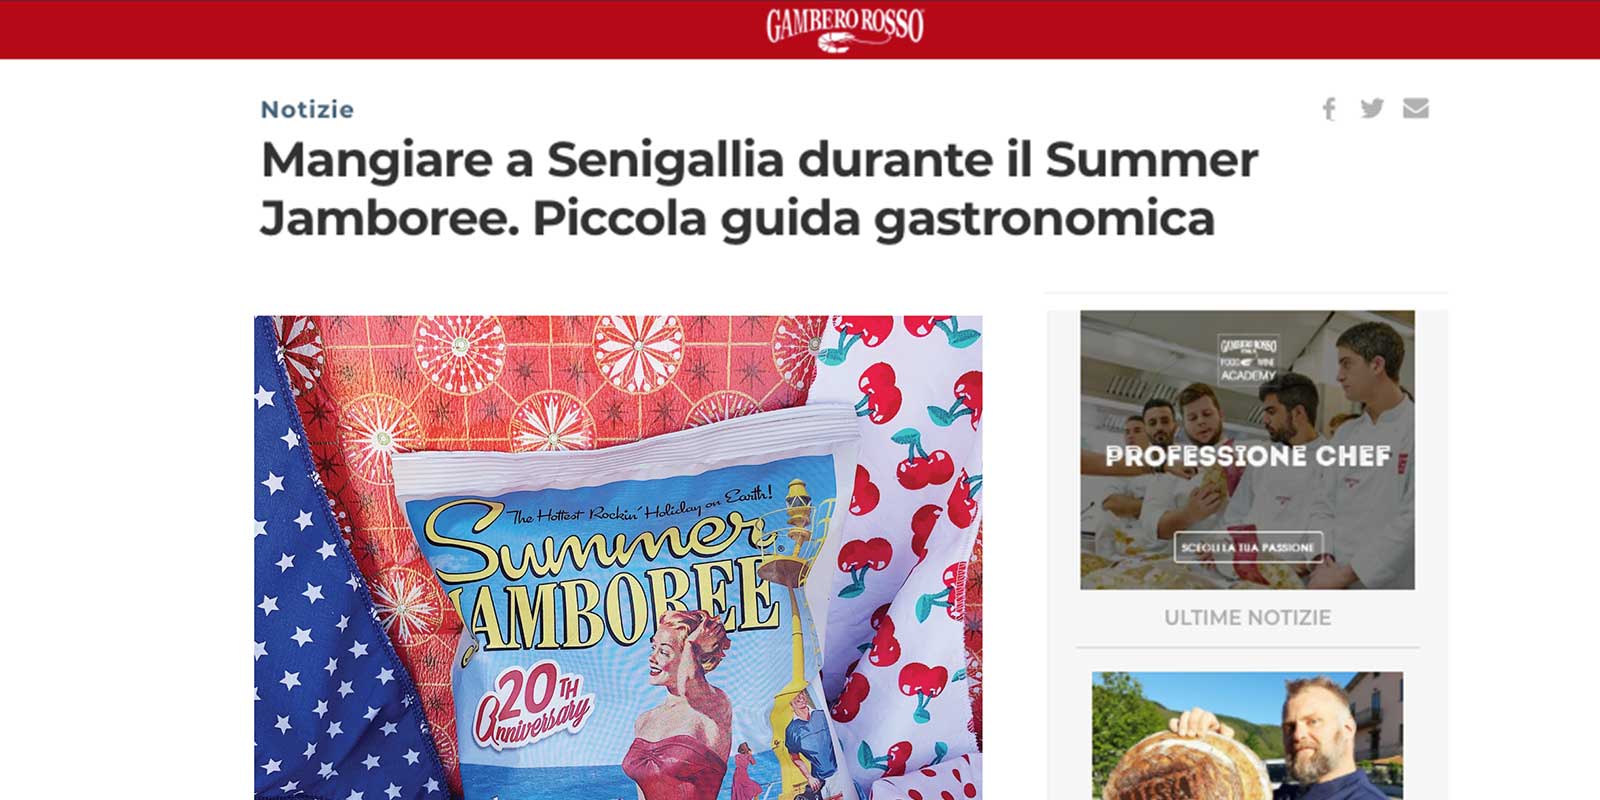 Tra le offerte di qualità di Senigallia c’è anche Patatas Nana secondo la rivista Gambero Rosso!